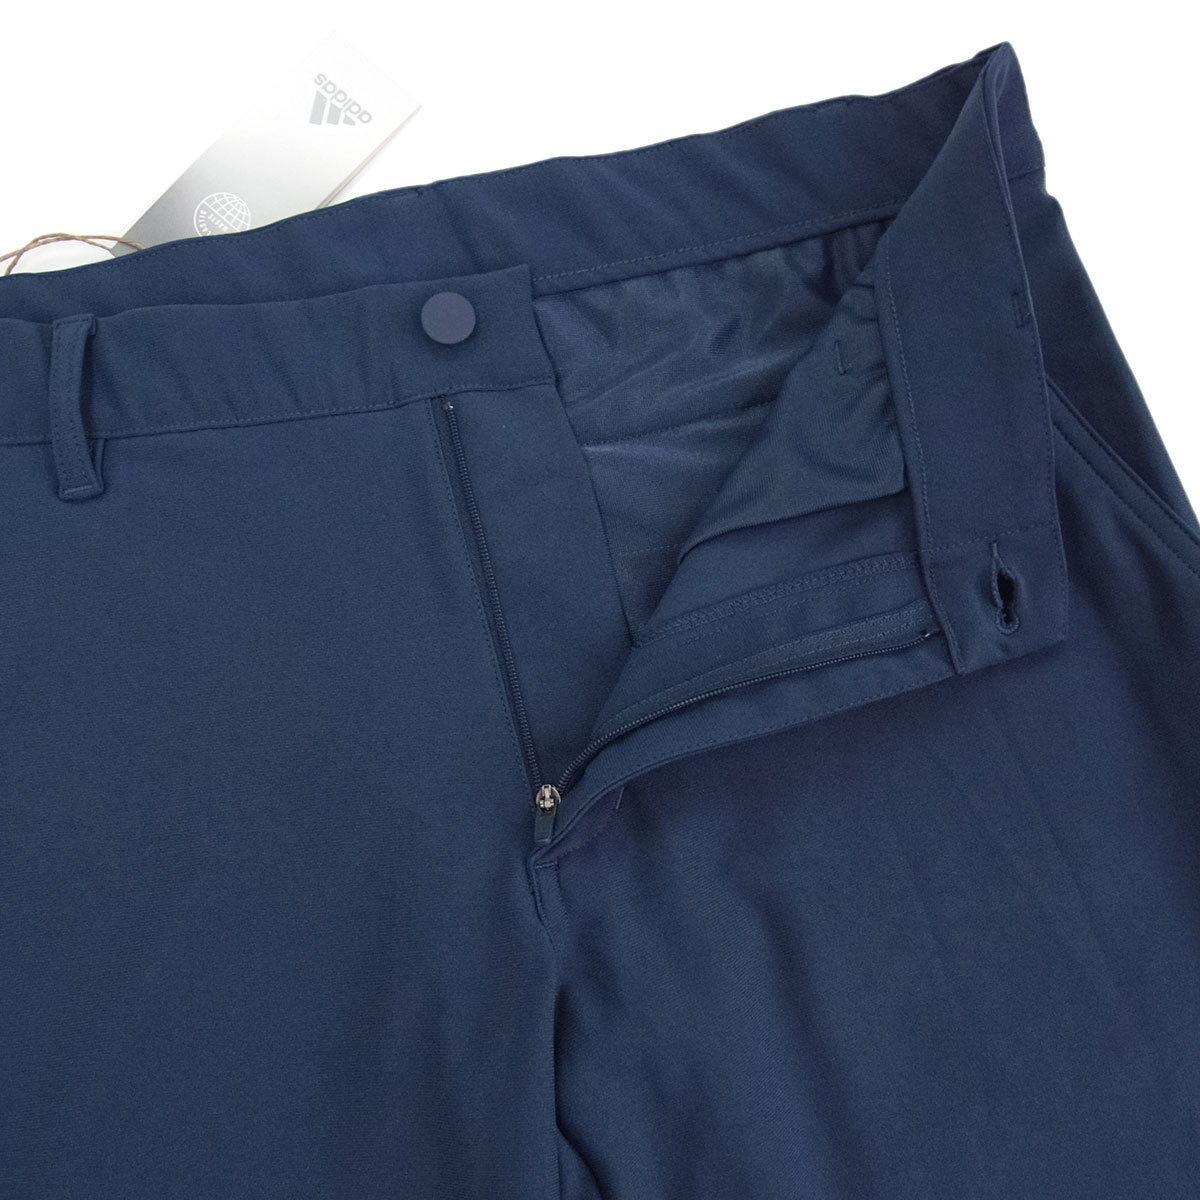 [ новый товар ] Adidas Golf [82] весна лето 4WAY стрейч Golf брюки слаксы талия .. краб эластичный cargo карман есть стирка возможность темно-синий adidas